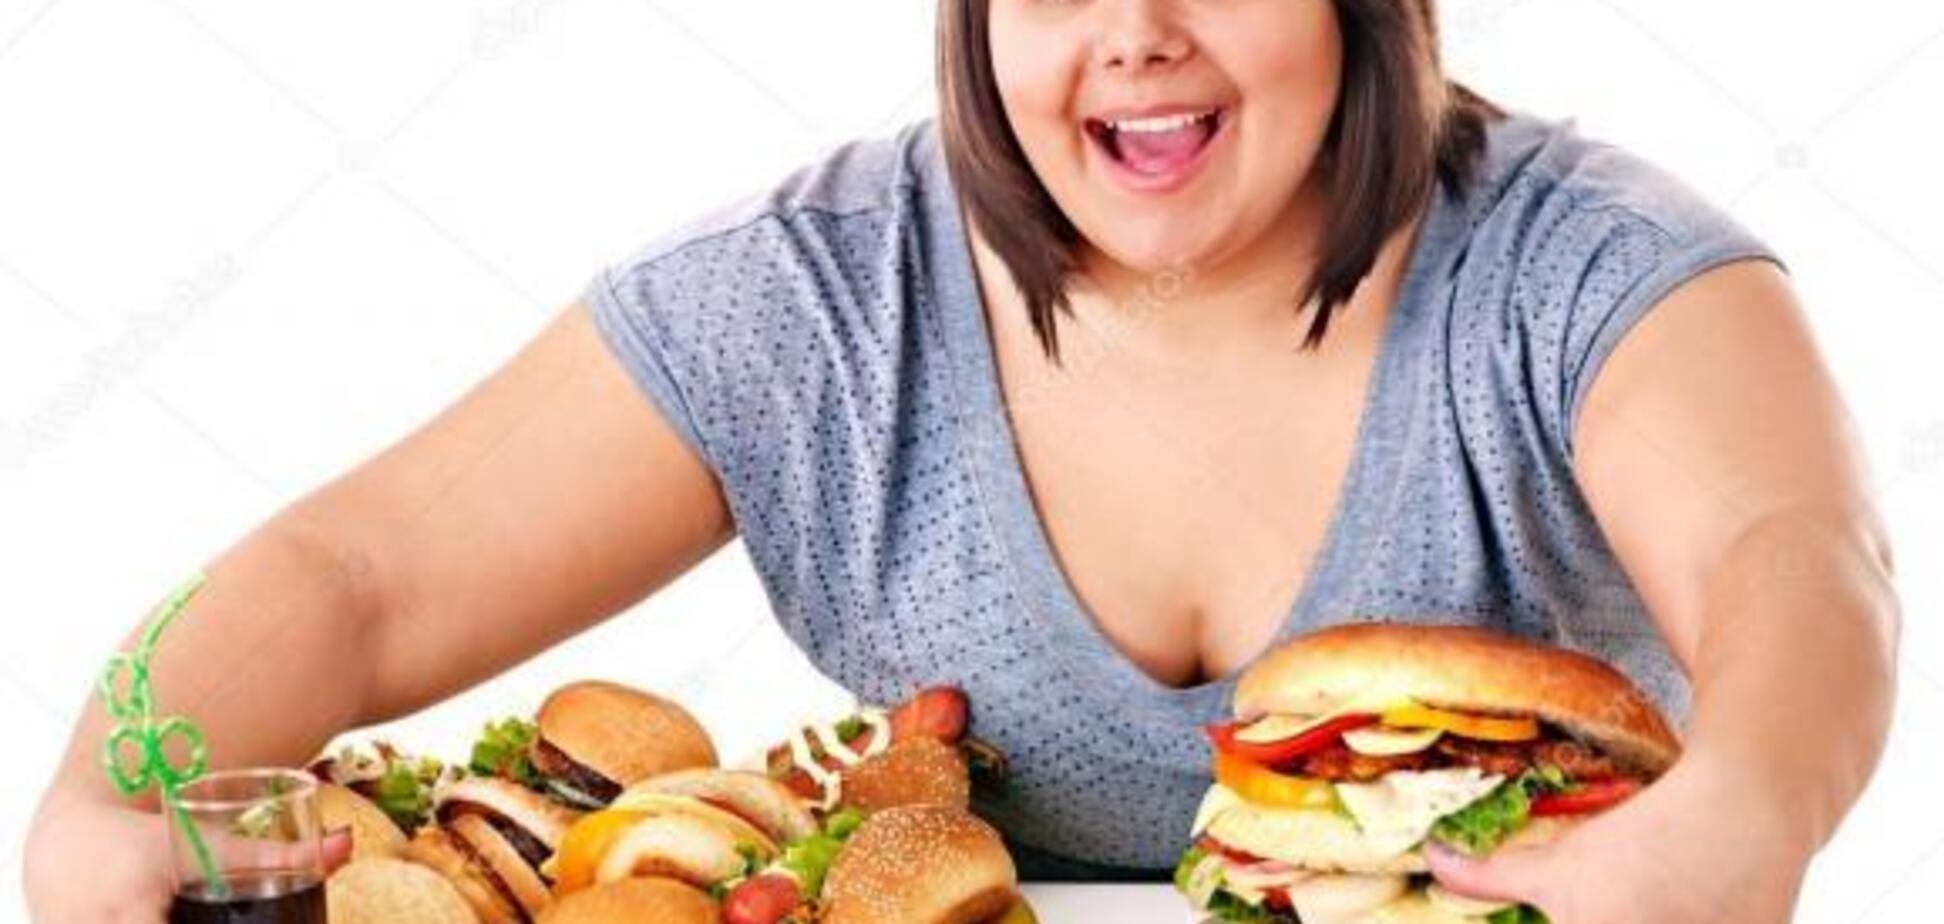 'Виновата патология': ученые заявили о новом исследовании причин лишнего веса 